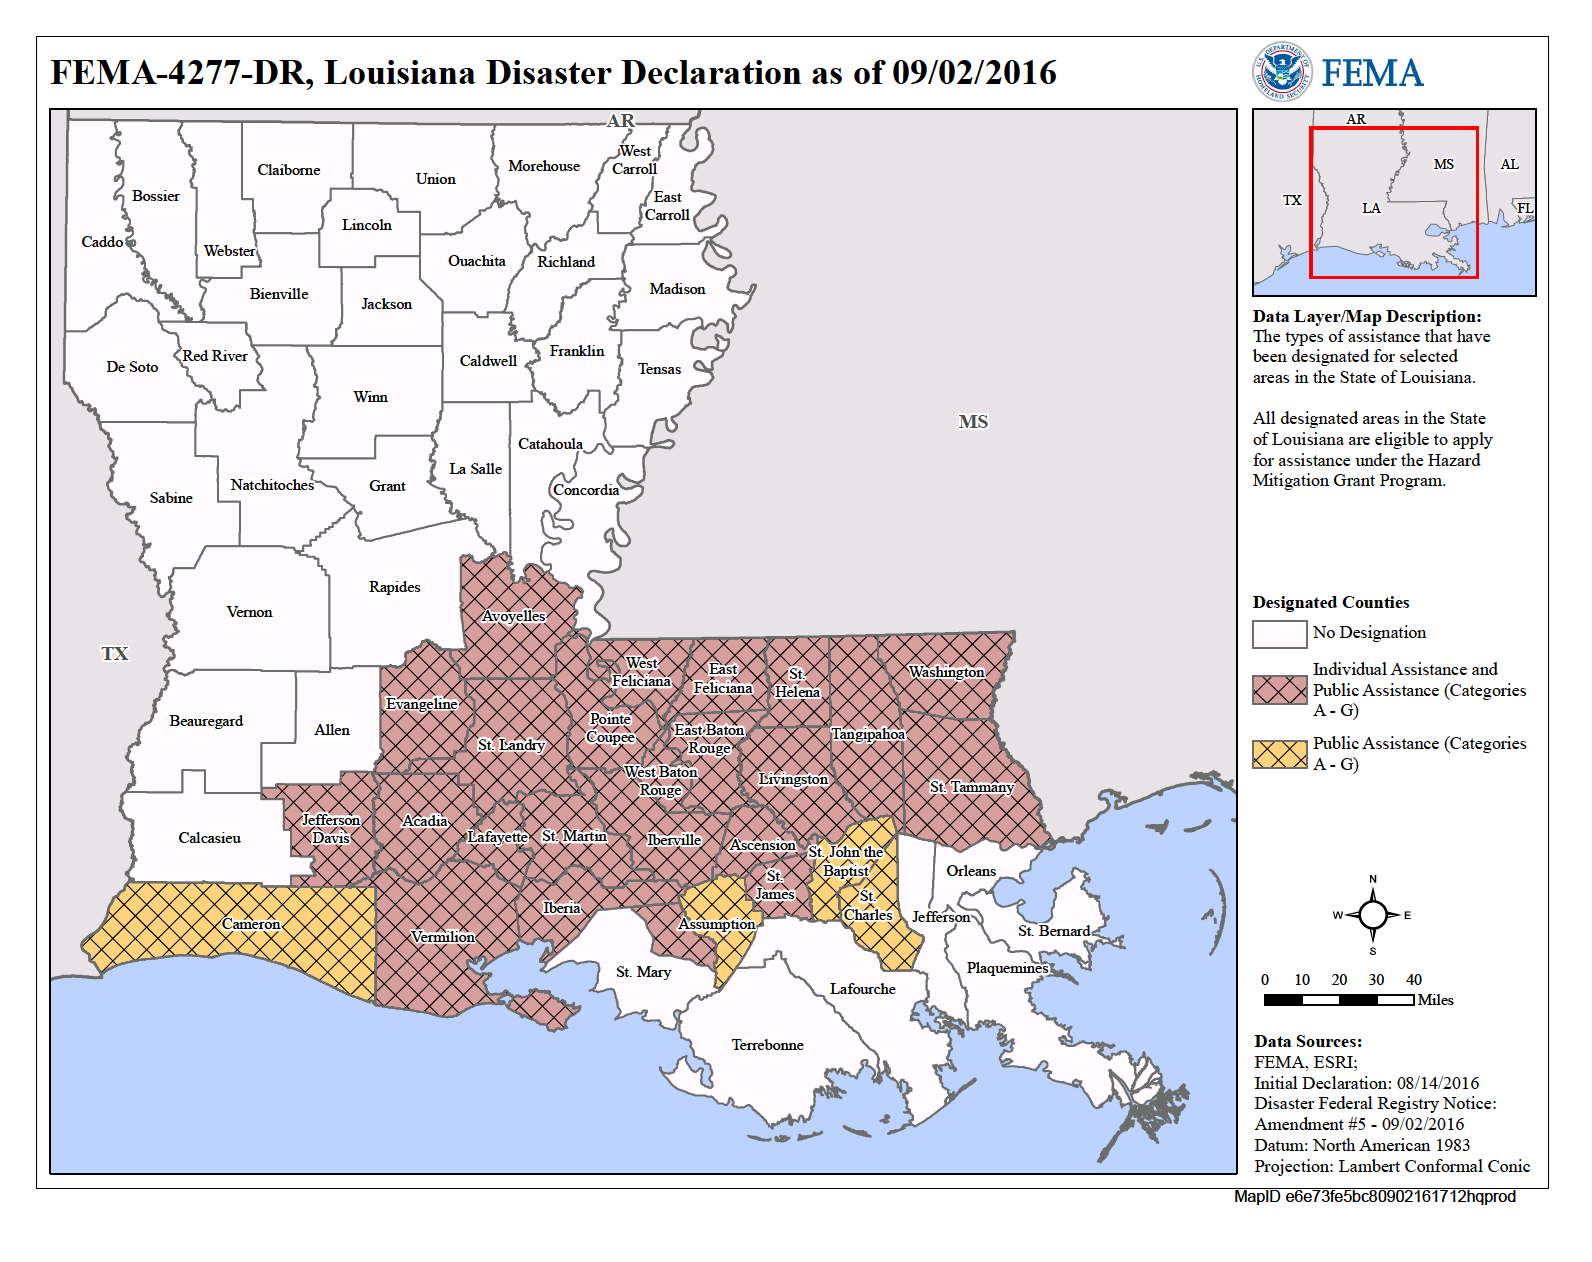 Louisiana Severe Storms And Flooding Dr 4277 Fema Gov